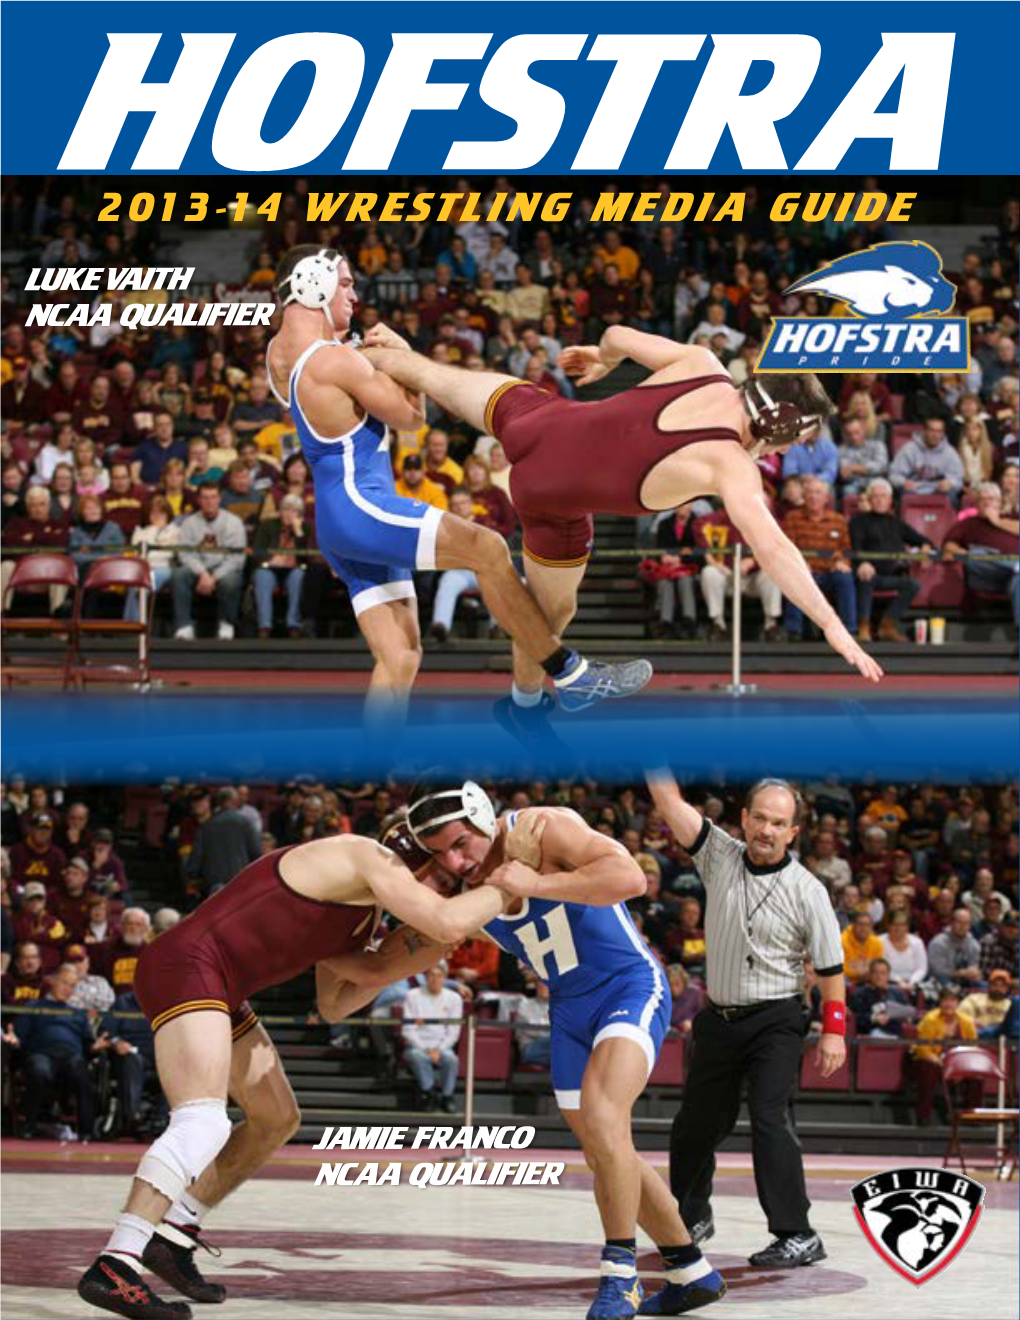 2013-14 Wrestling Media Guide